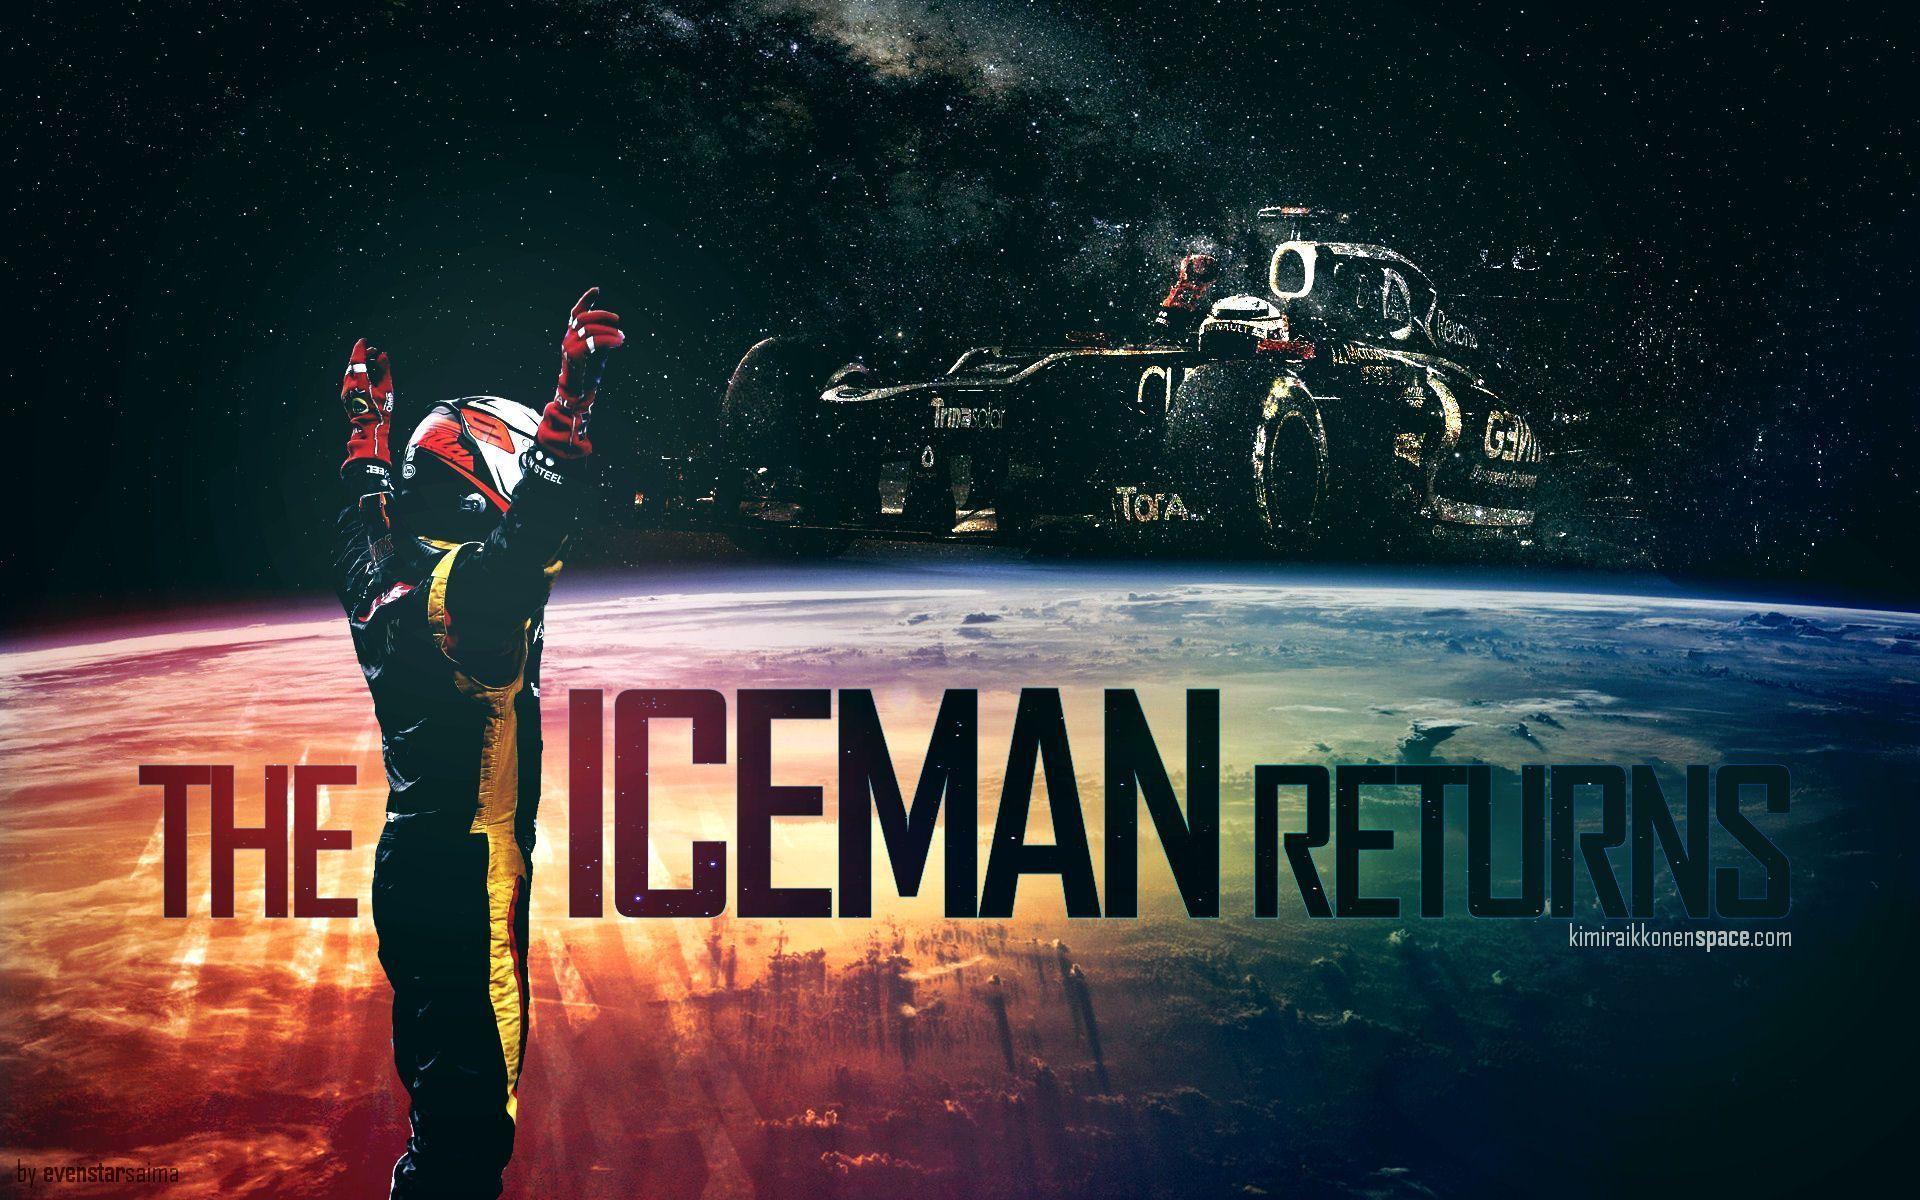 Wallpaper: The Iceman Returns. Kimi Räikkönen Space